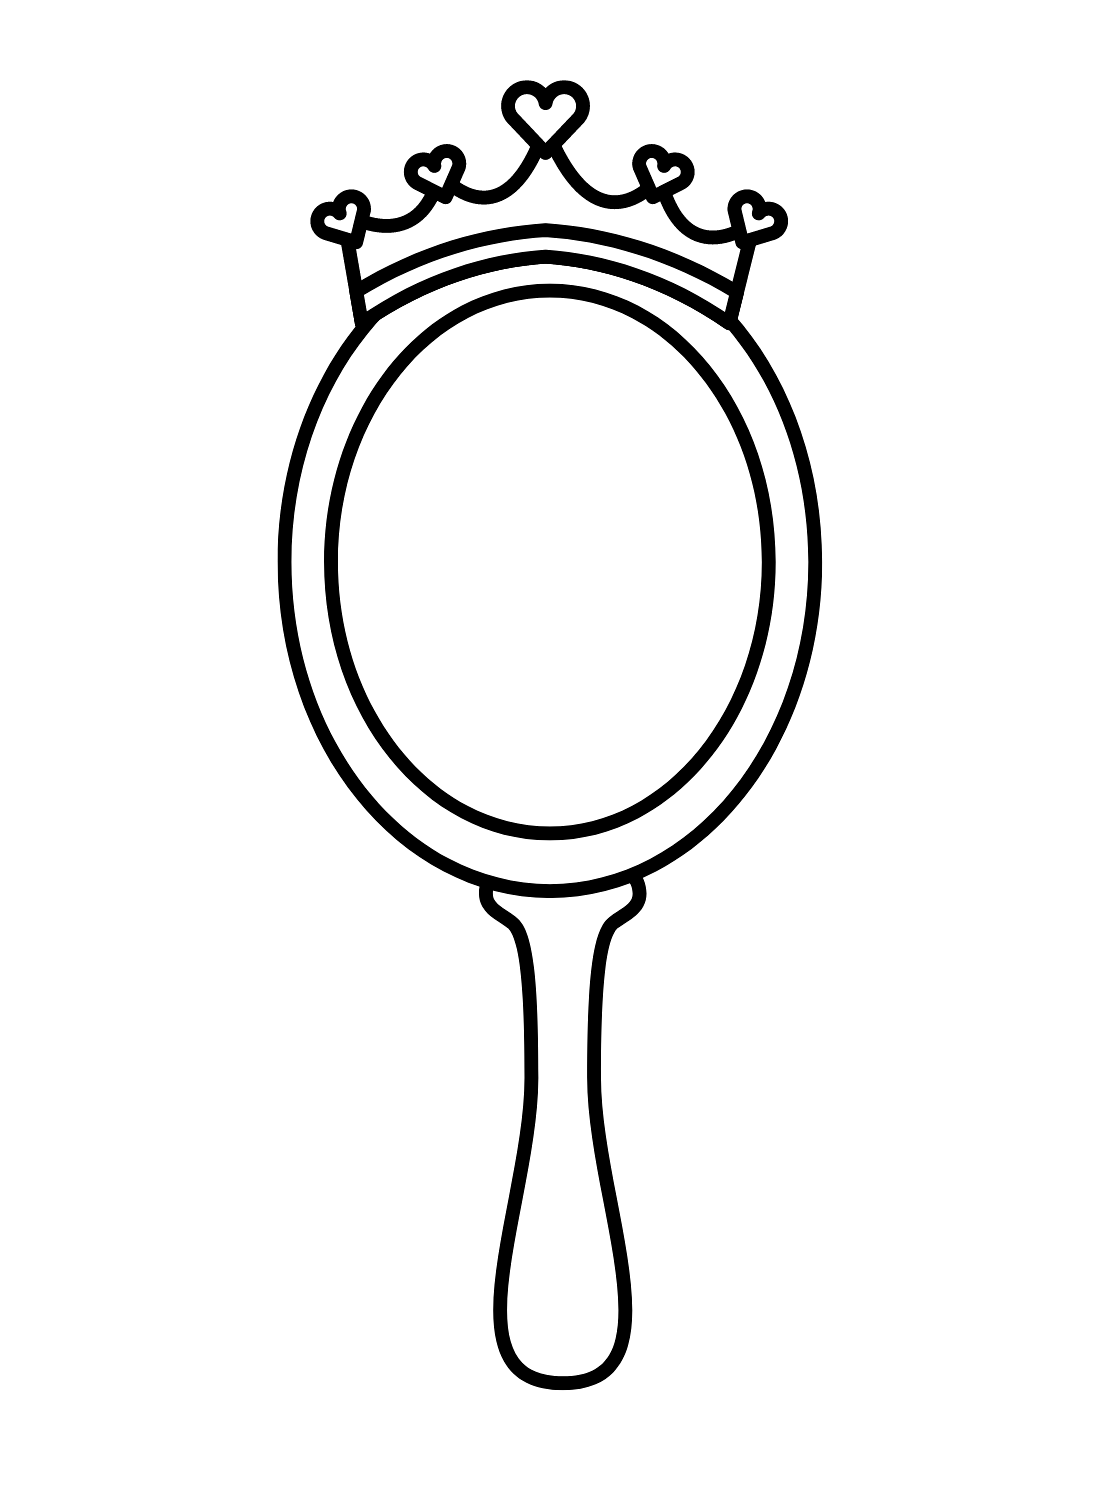 Espelho Mágico da Princesa Herdeira from Mirror